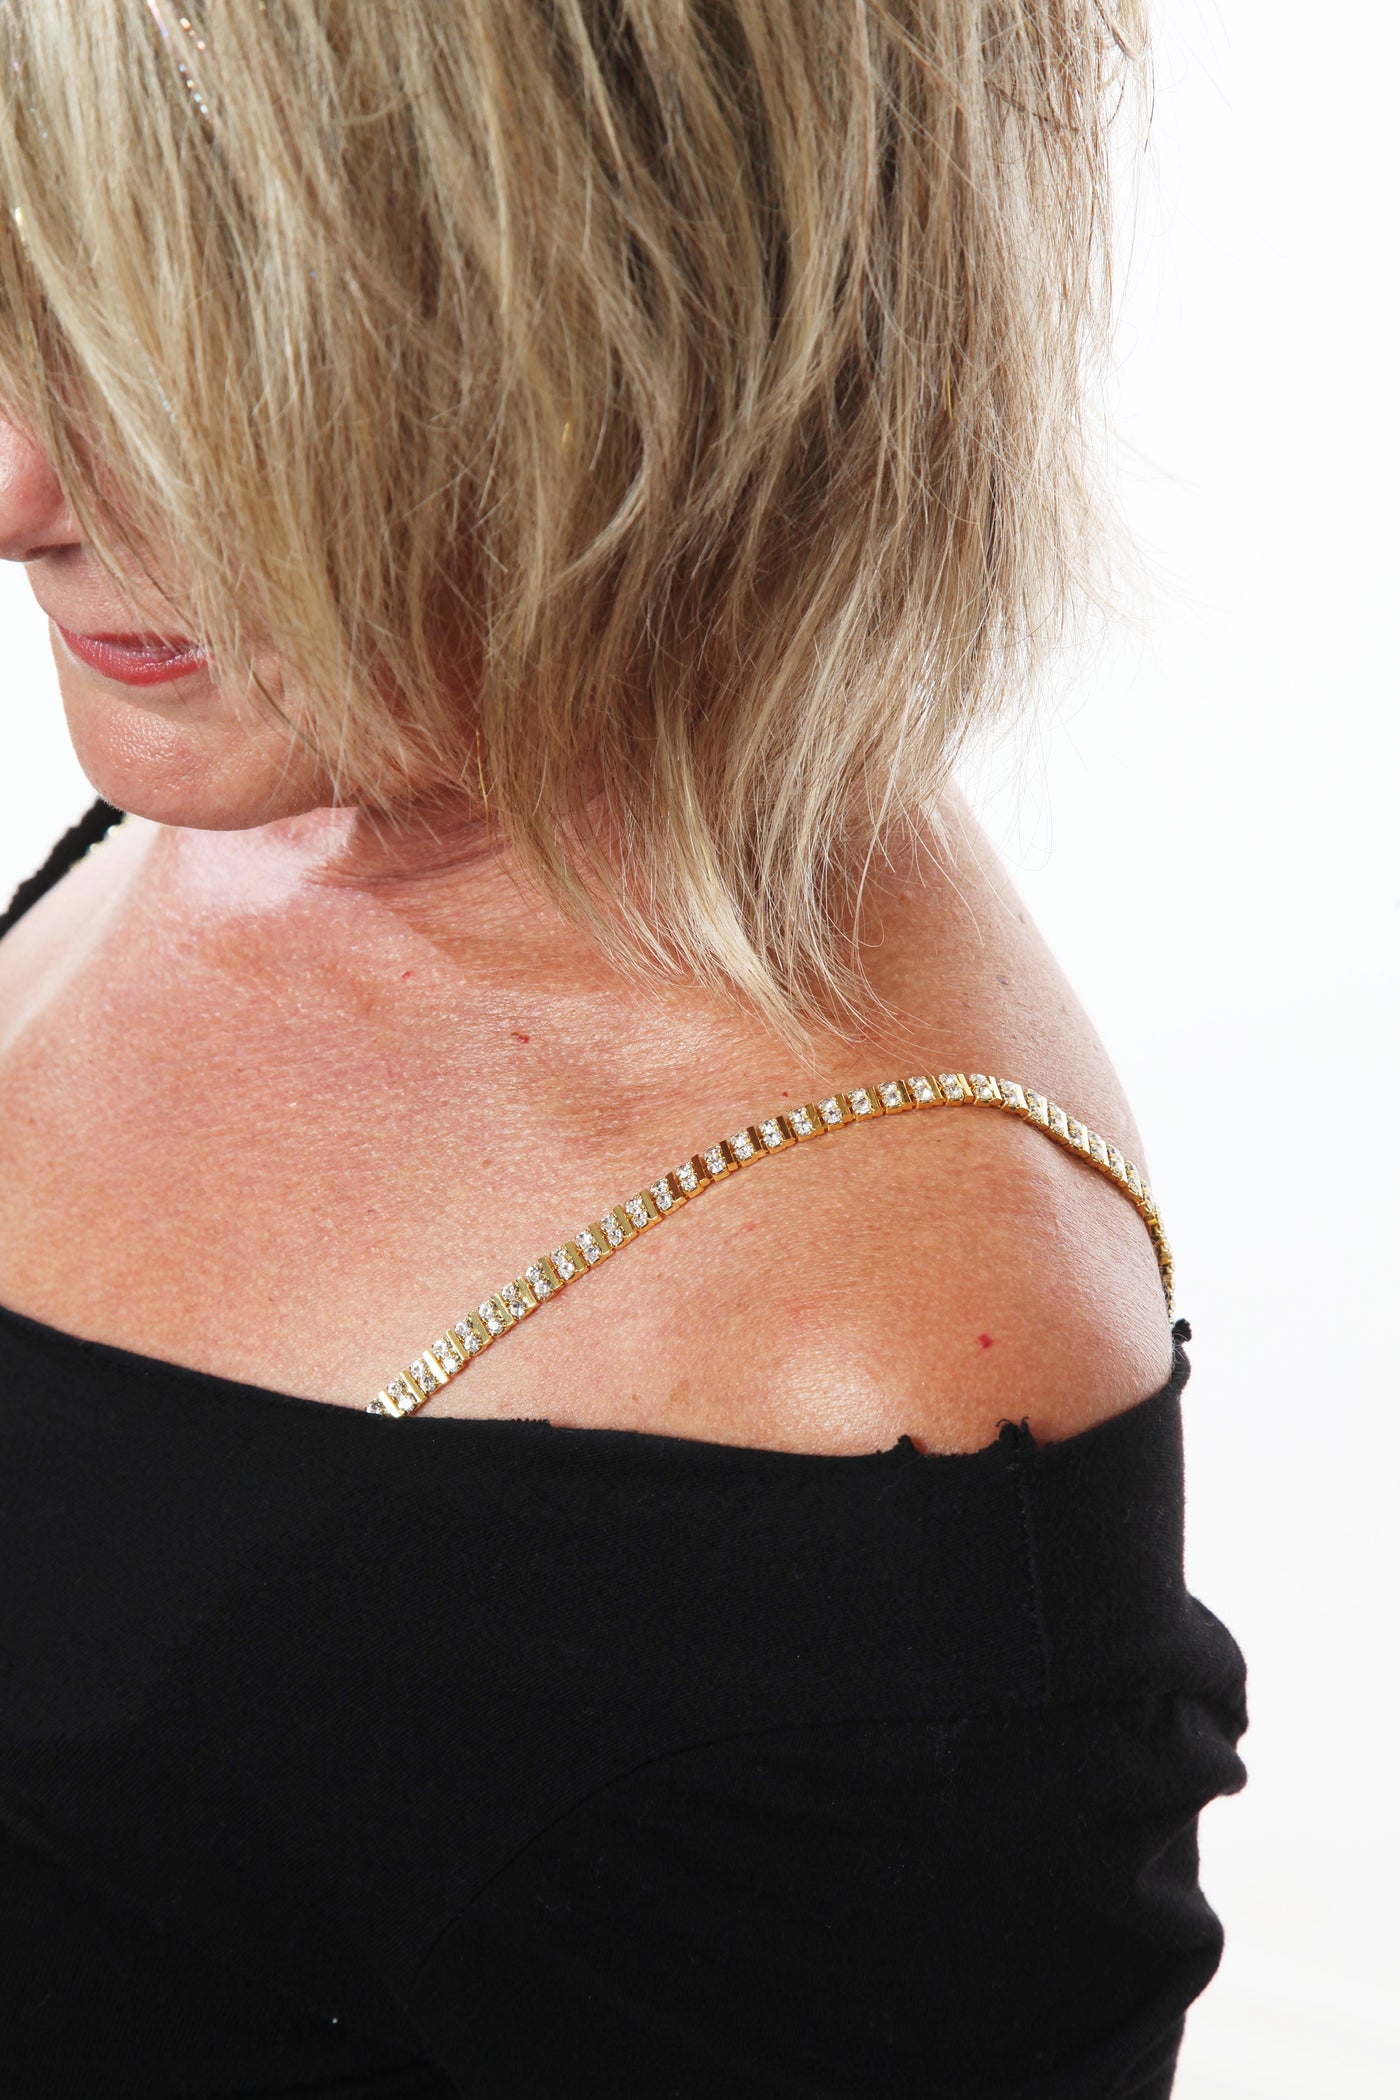 gold double rhinestone decorative bra straps